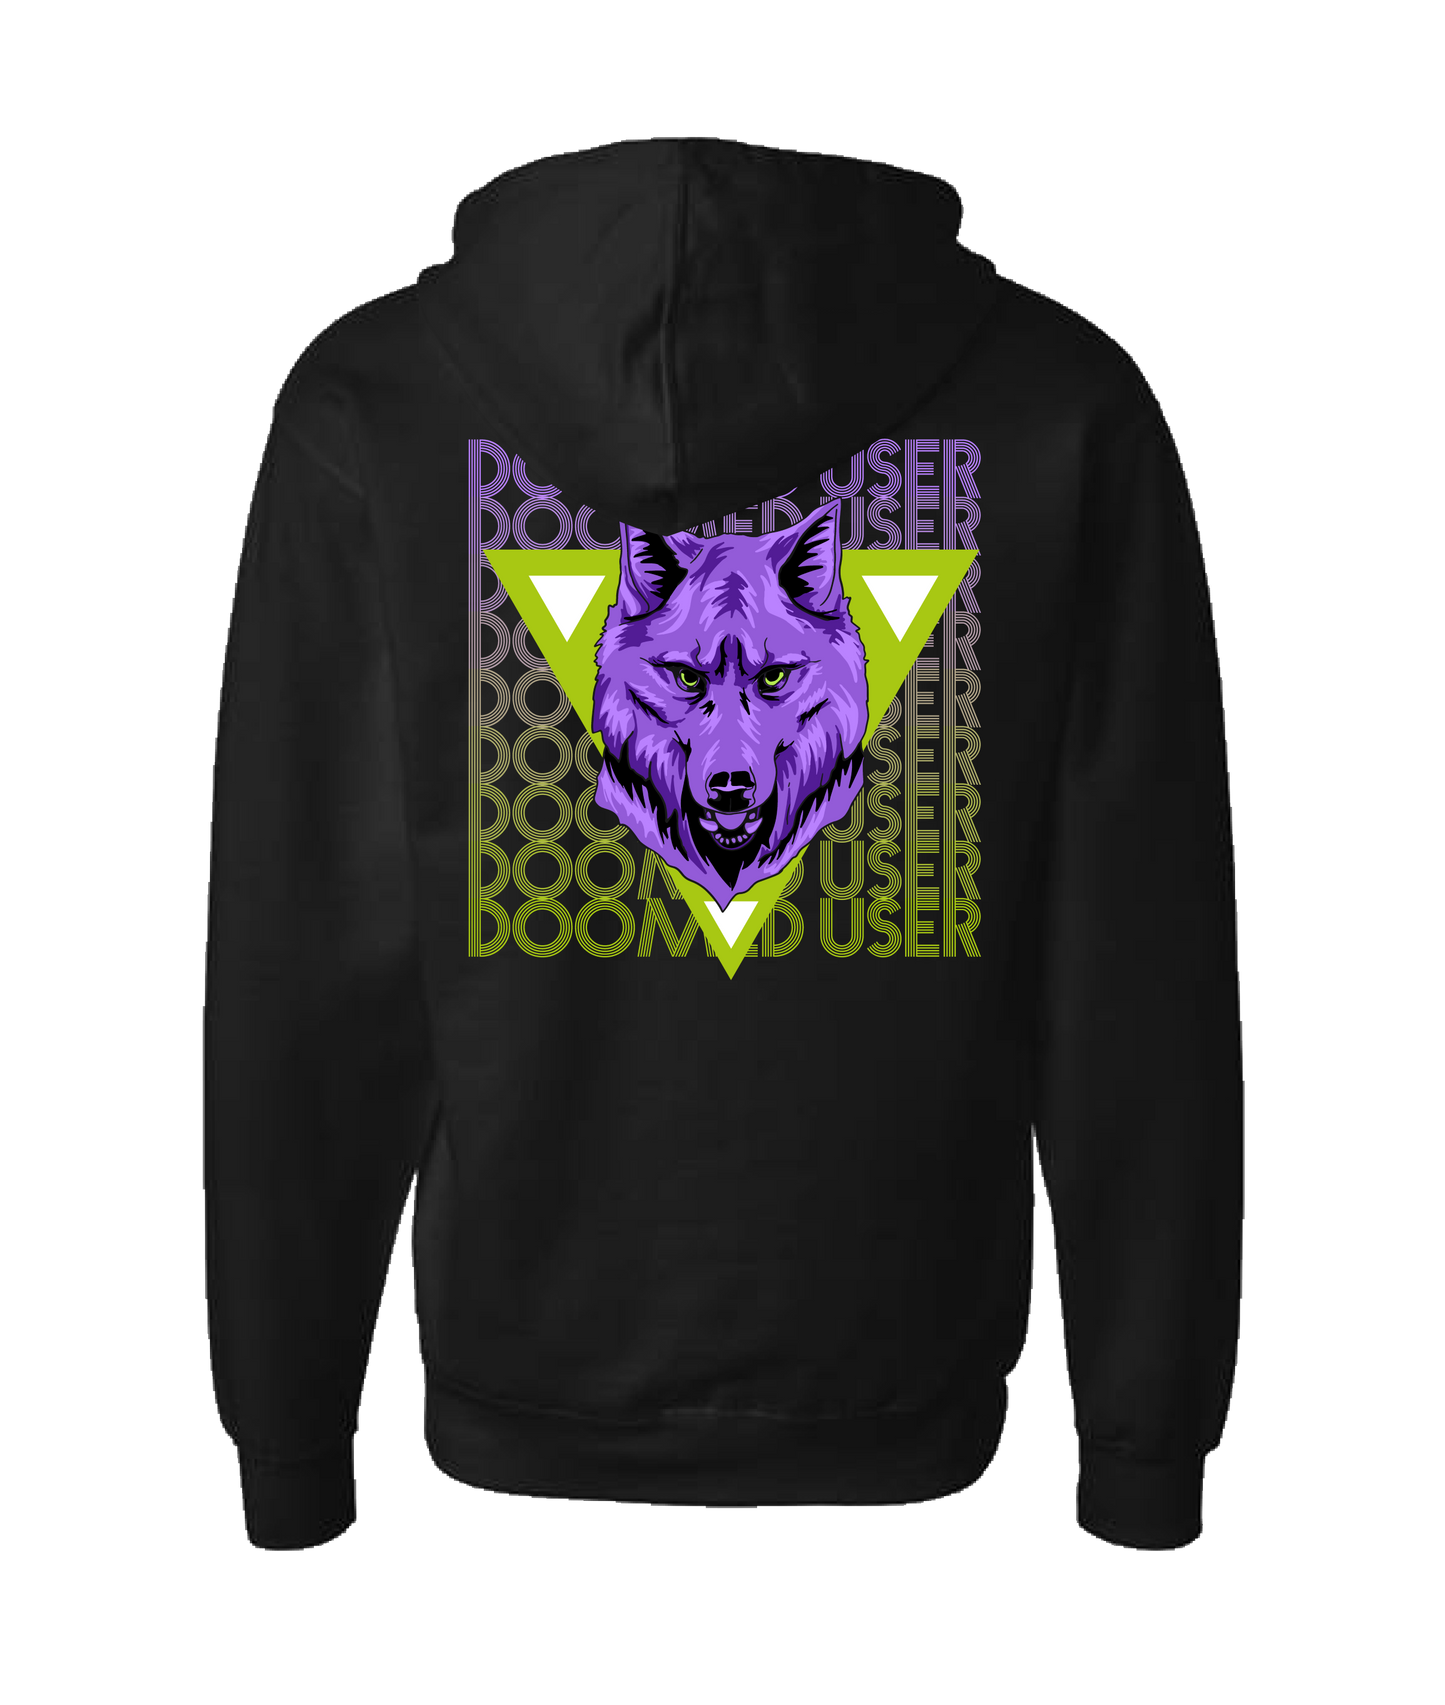 Doomed User - Wolf Purple - Black Zip Up Hoodie